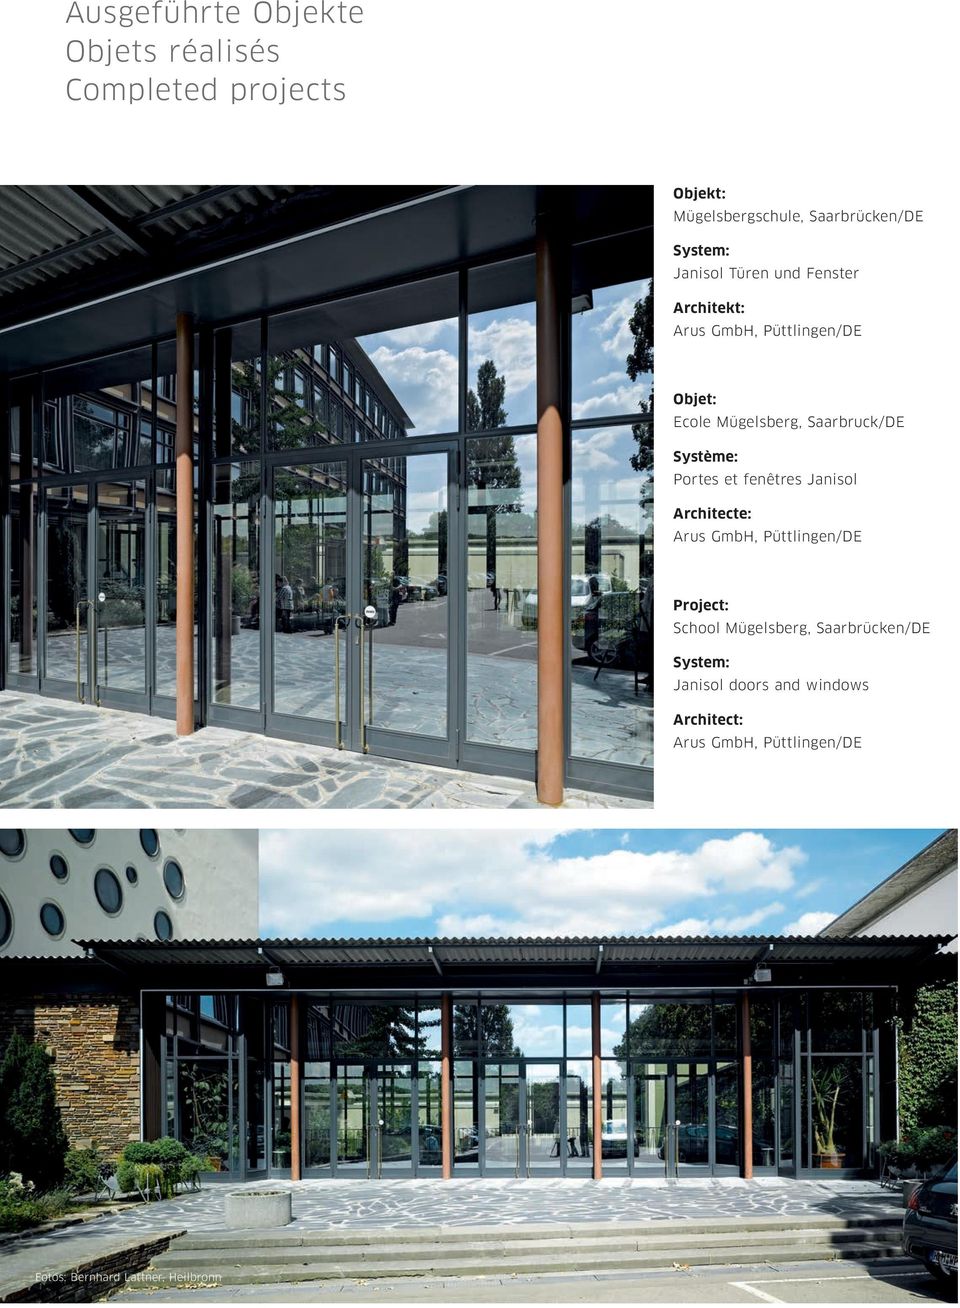 Saarbruck/DE Portes et fenêtres Janisol Arus GmbH, Püttlingen/DE School Mügelsberg,